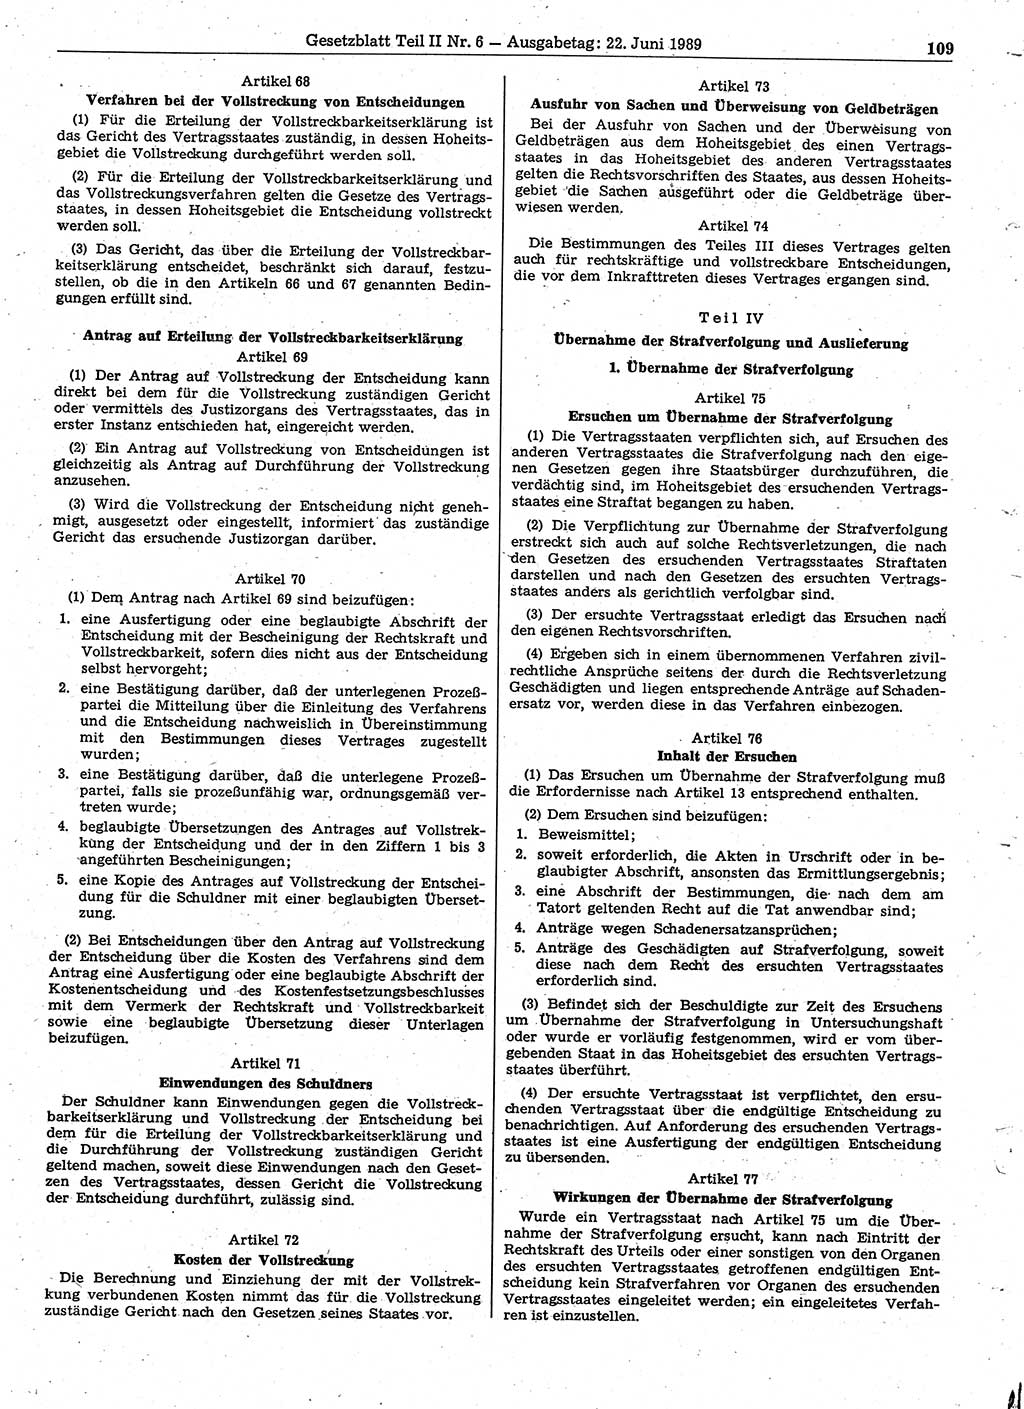 Gesetzblatt (GBl.) der Deutschen Demokratischen Republik (DDR) Teil ⅠⅠ 1989, Seite 109 (GBl. DDR ⅠⅠ 1989, S. 109)